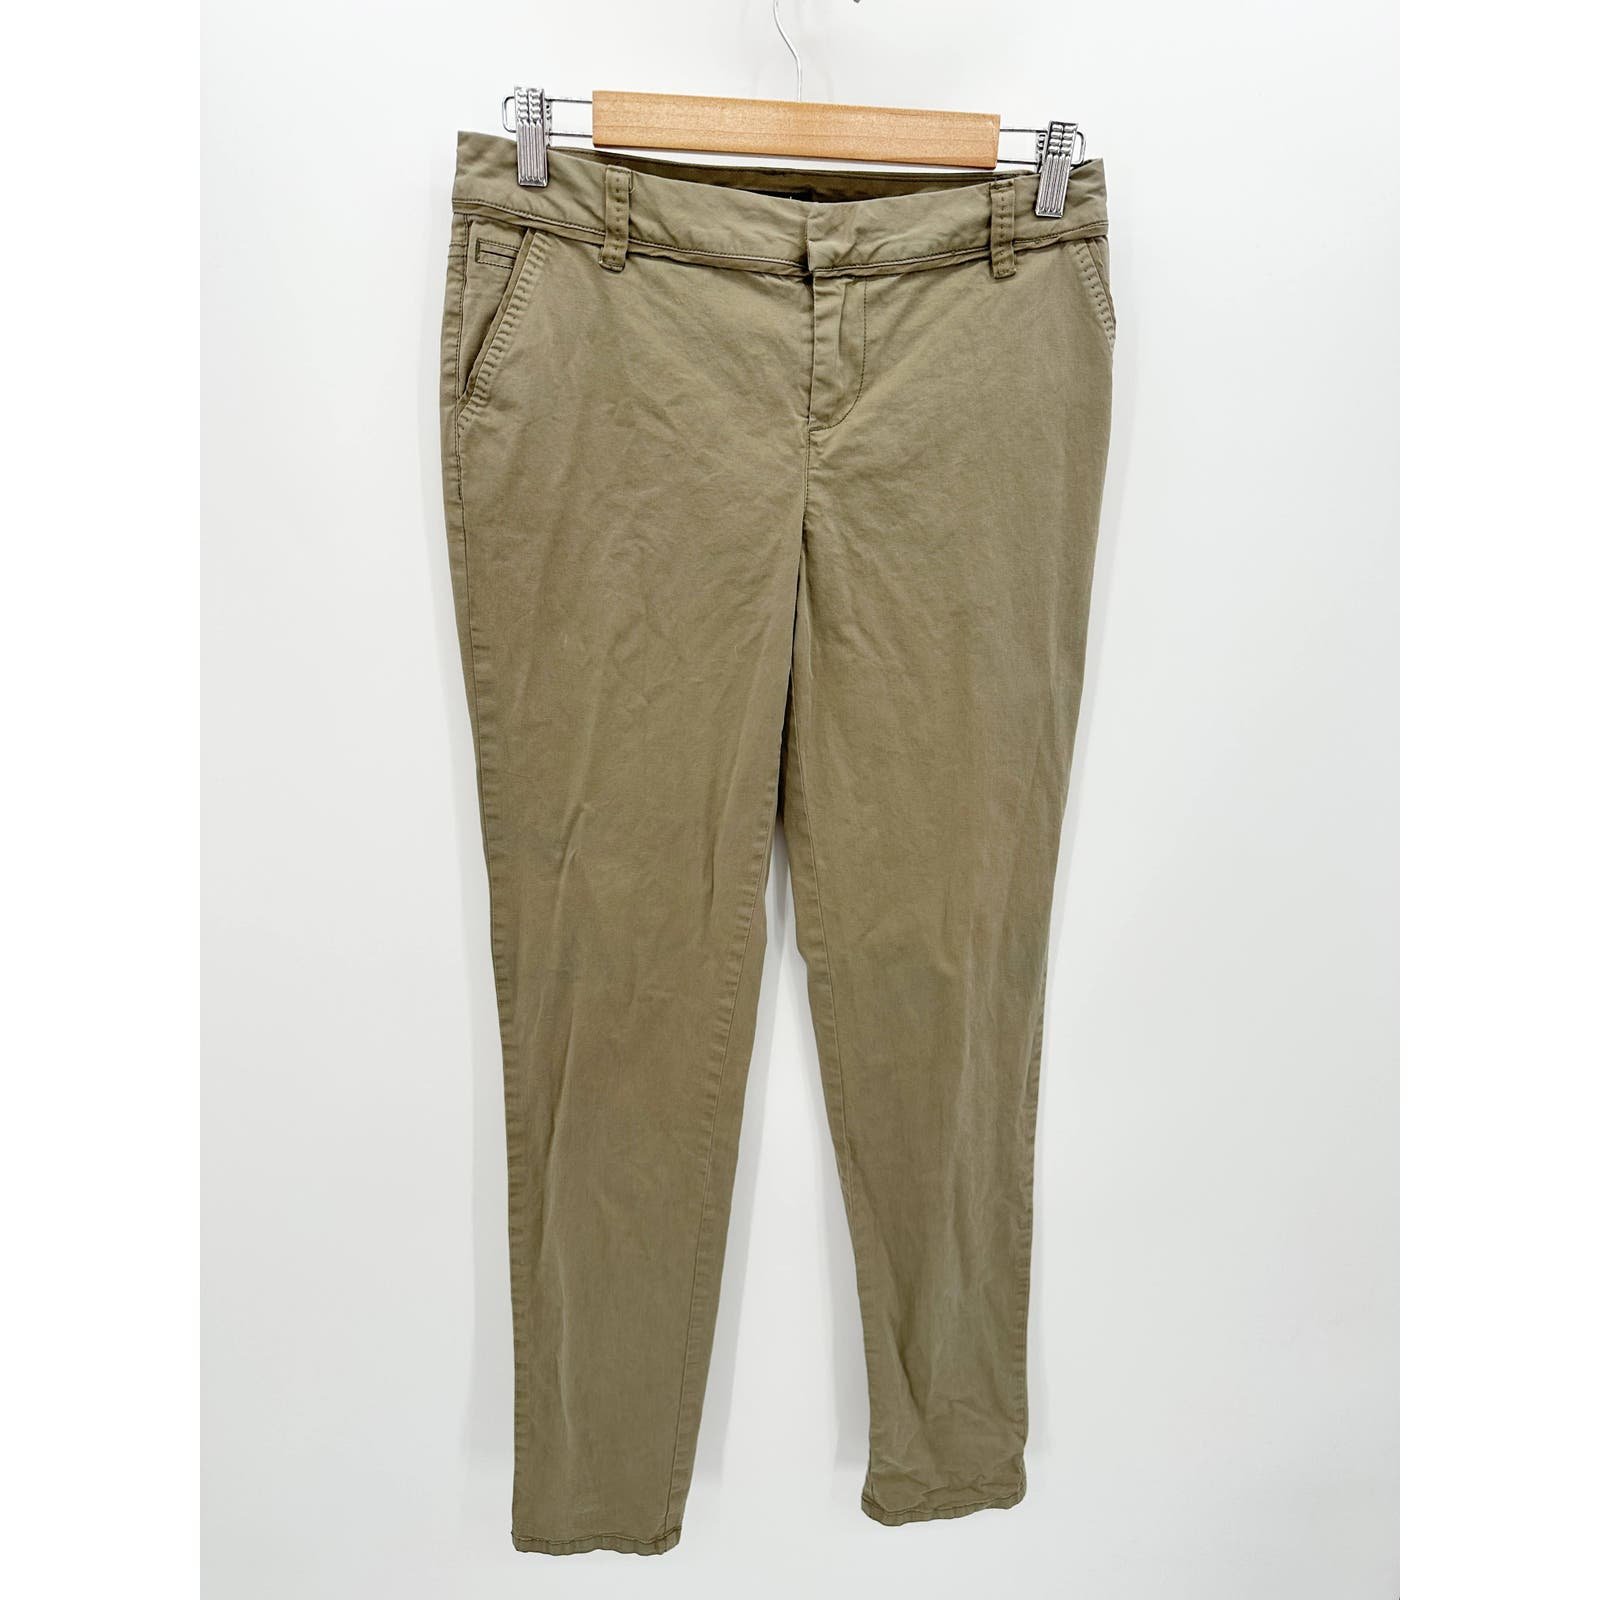 Promod Solid Green Khaki Tan Hidden Fly Skinny Pants Women´s Size 29 Q94eESJe8